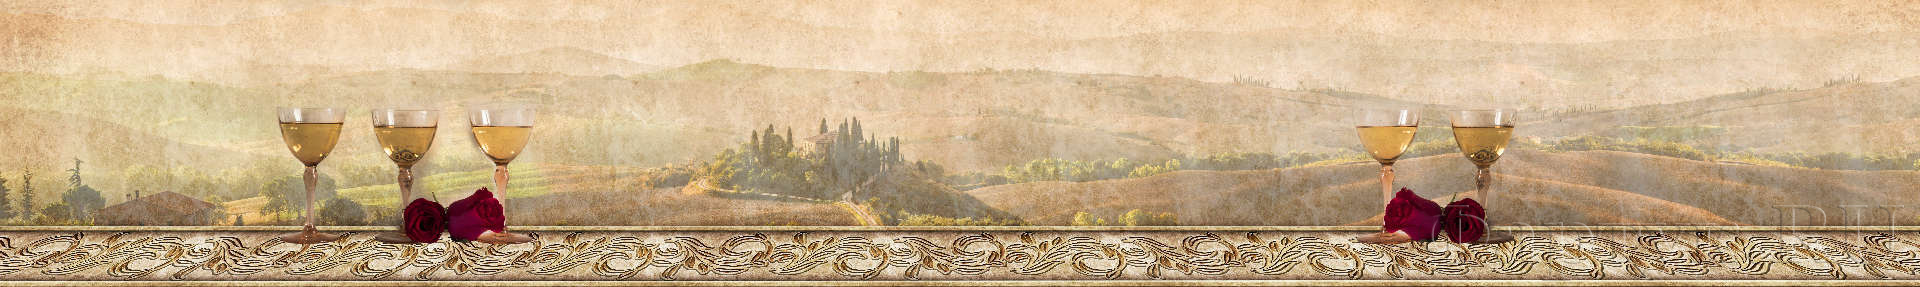 Бокалы вина на фоне рисованного пейзажа